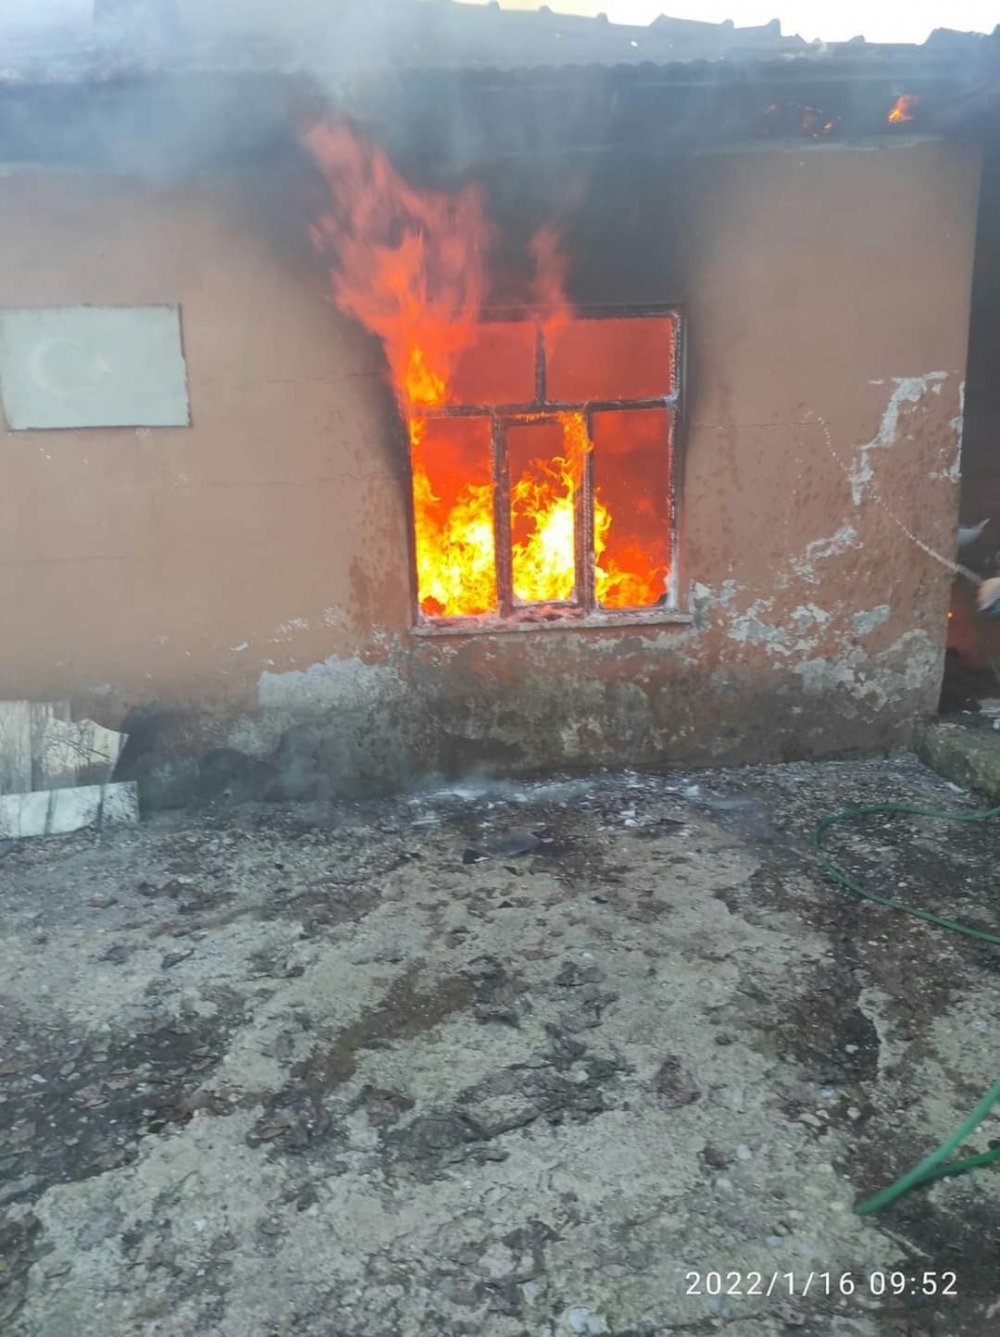 Denizli'nin Çameli ilçesinde bacadan çıkan kıvılcımlardan kaynaklı evde yangın meydana geldi. İtfaiye ekipleri tarafından söndürülen ev kullanılamaz hale geldi.